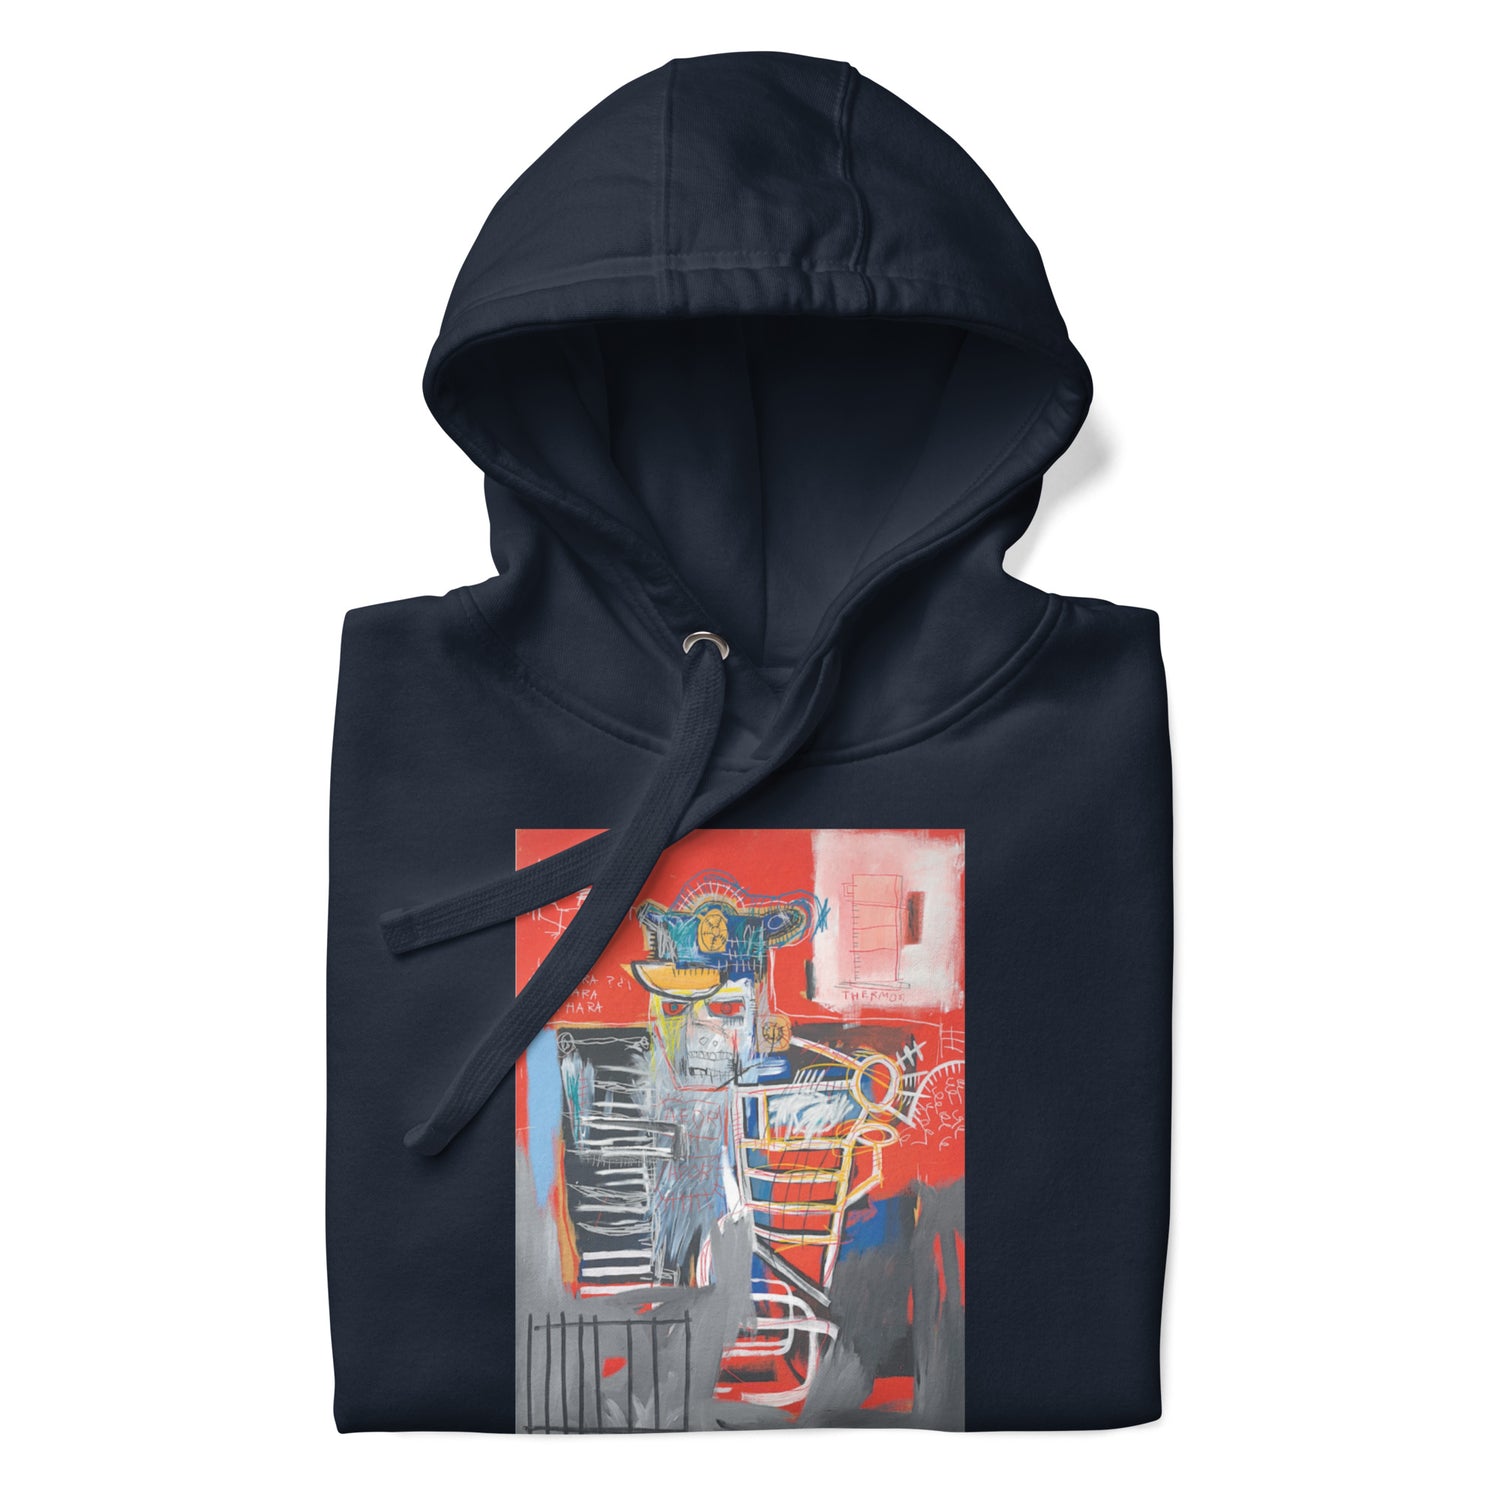 Jean-Michel Basquiat "La Hara" Artwork Printed Premium Streetwear Sweatshirt Hoodie Navy Blue